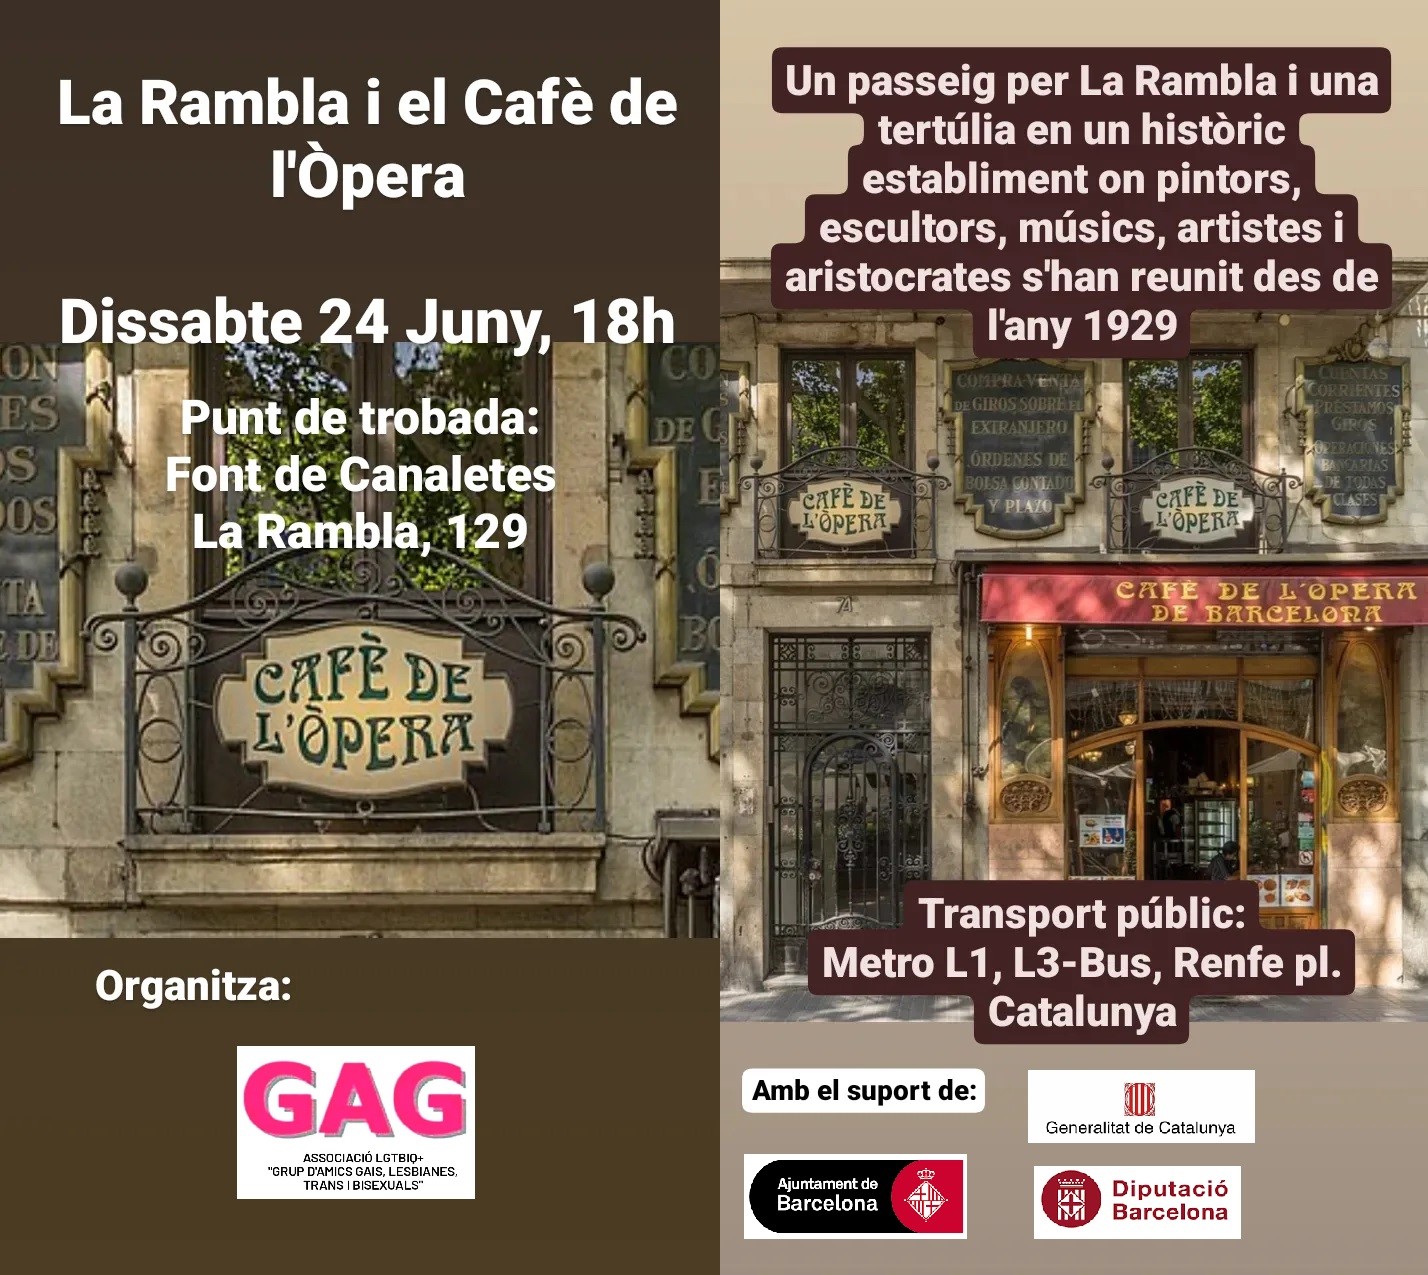 Dissabte 24 de Juny: La Rambla i el Cafè de l’Òpera